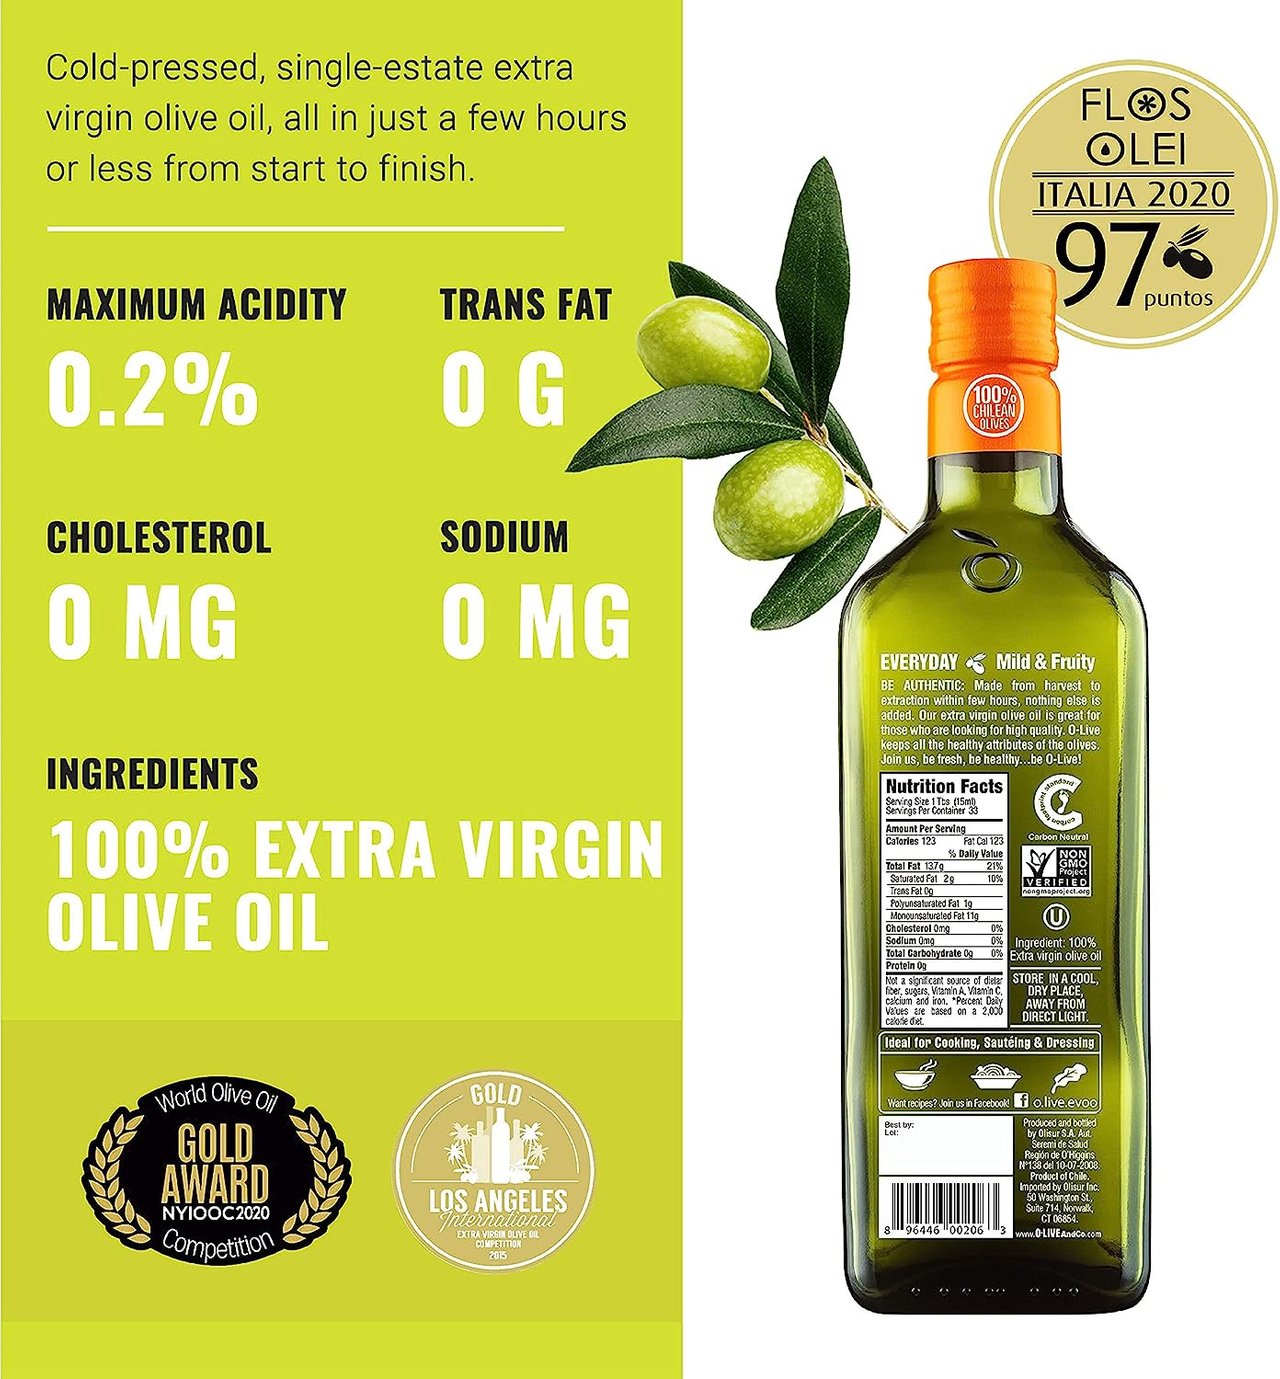 2 O-Live & Co. - Gold Medal Winner Extra Virgin Olive Oil, Cold Pressed, Premium Olive Oil Ideal for Cooking or for Salad Dressing, Versatile Olive Oil Extra Virgin - 17fl oz (500ml)